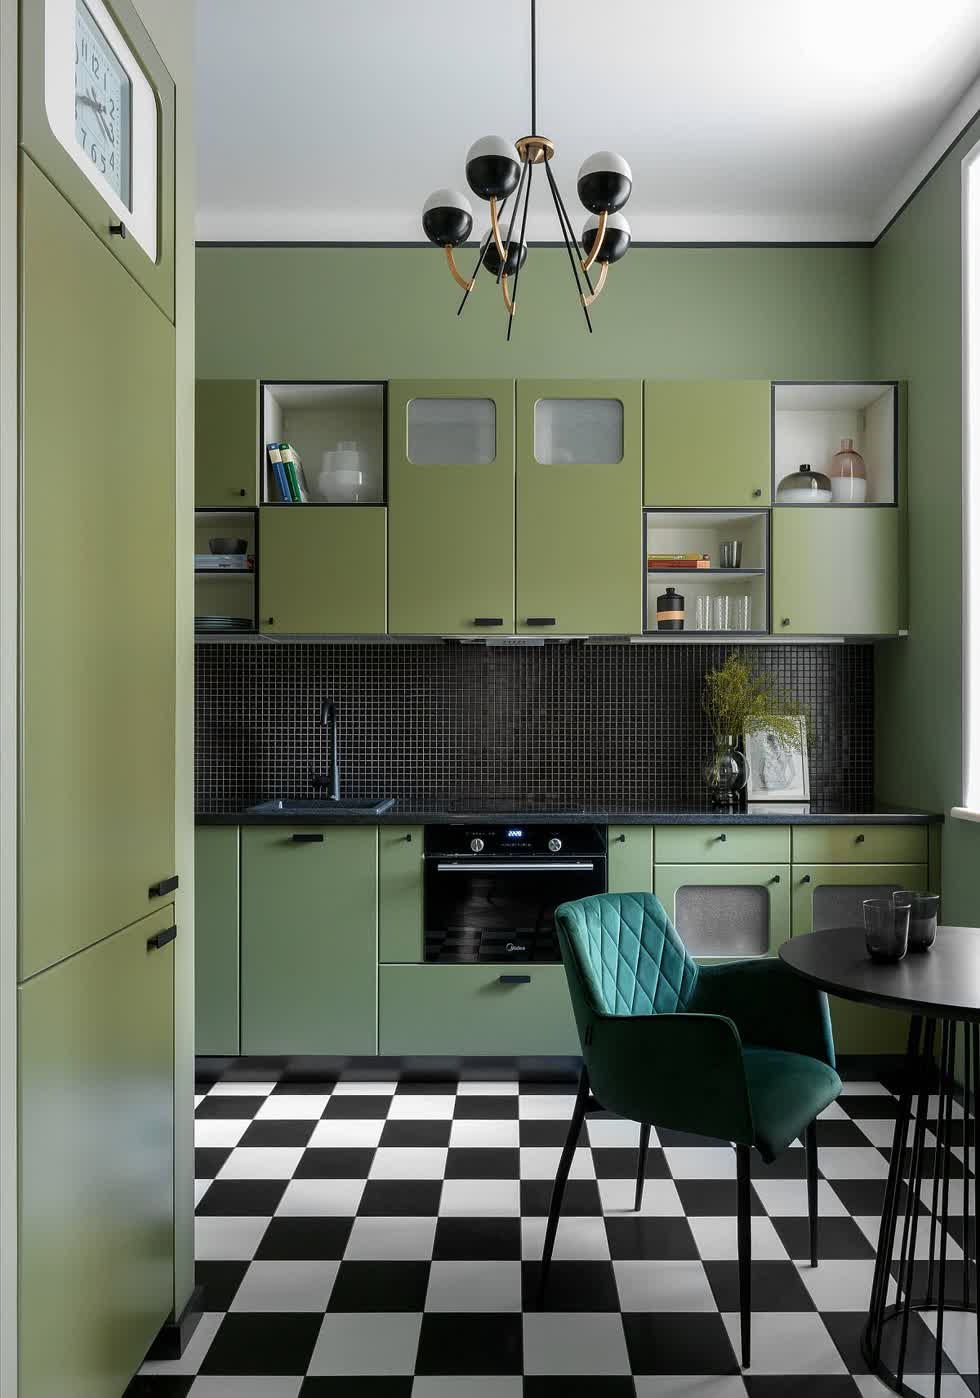   Gạch lát sàn nhà bếp màu đen và trắng sẽ đưa bạn quay ngược thời gian và mang đến cho không gian vẻ ngoài retro.  